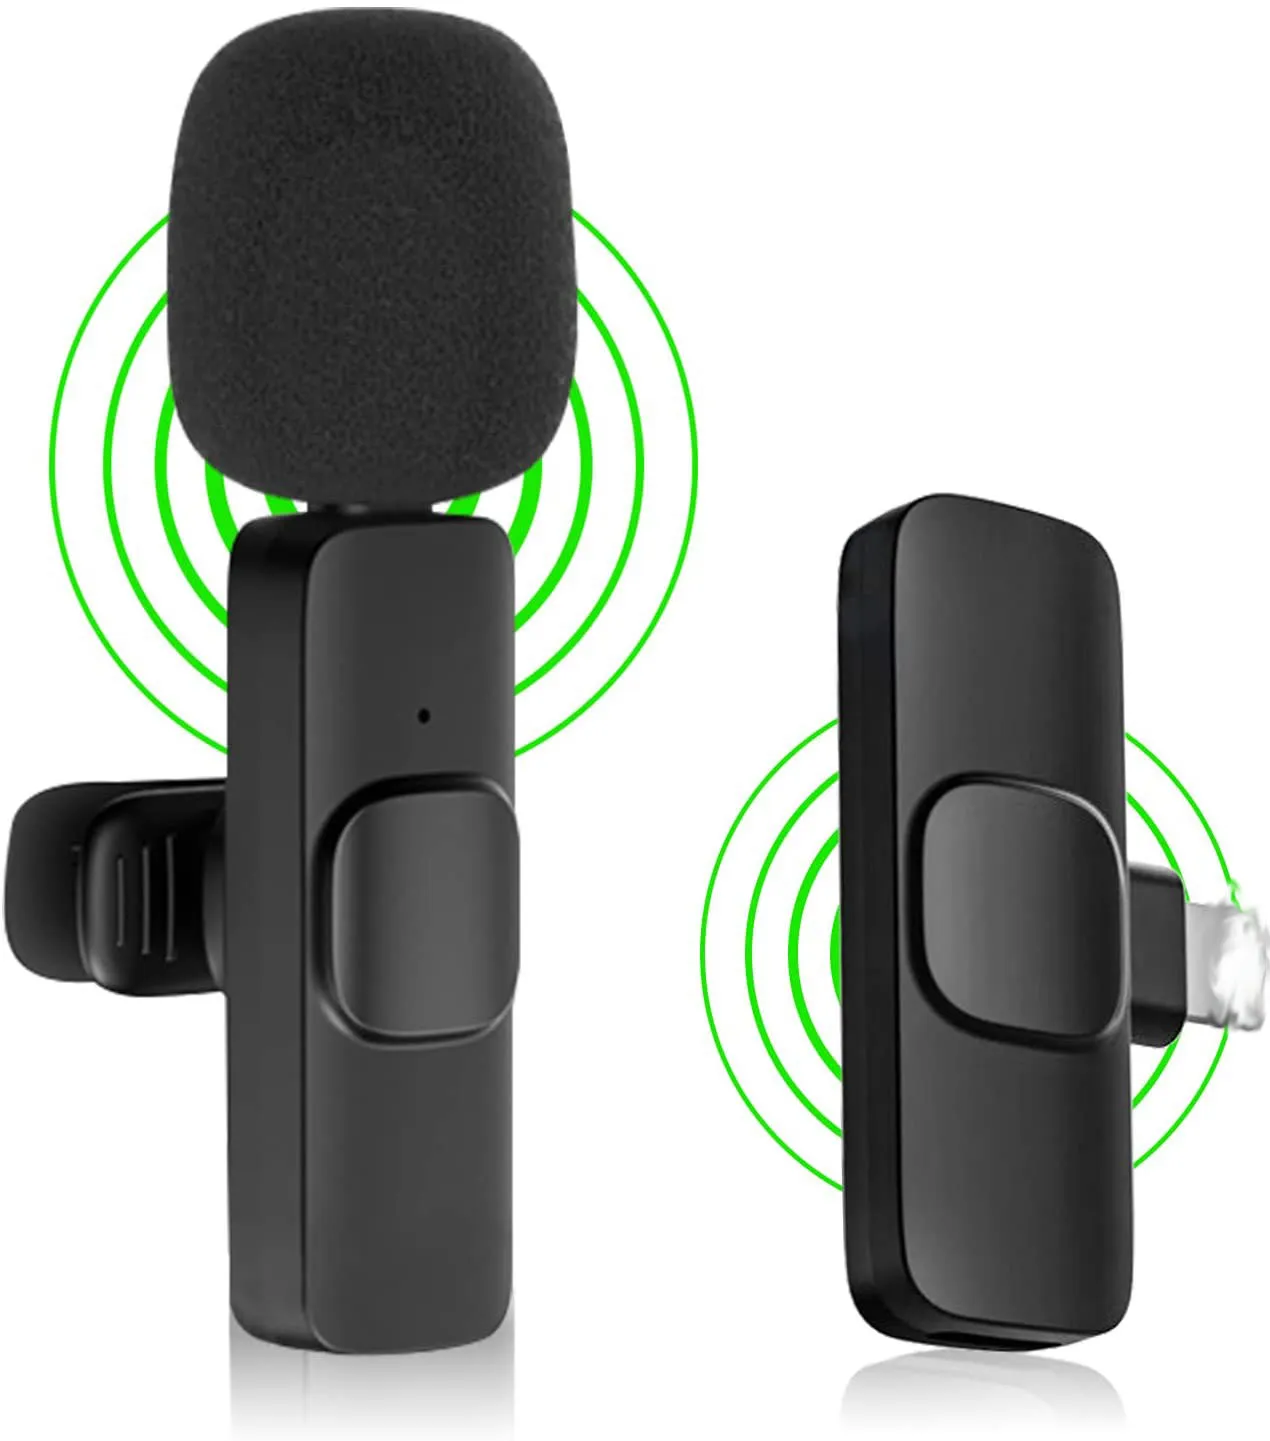 Mini Lavalier Wireless Microphone VLOG Nagrywanie wideo do telefonu komórkowego Pad YouTube Facebook Live Stream Tiktok Wywiad Reansowanie hałasu